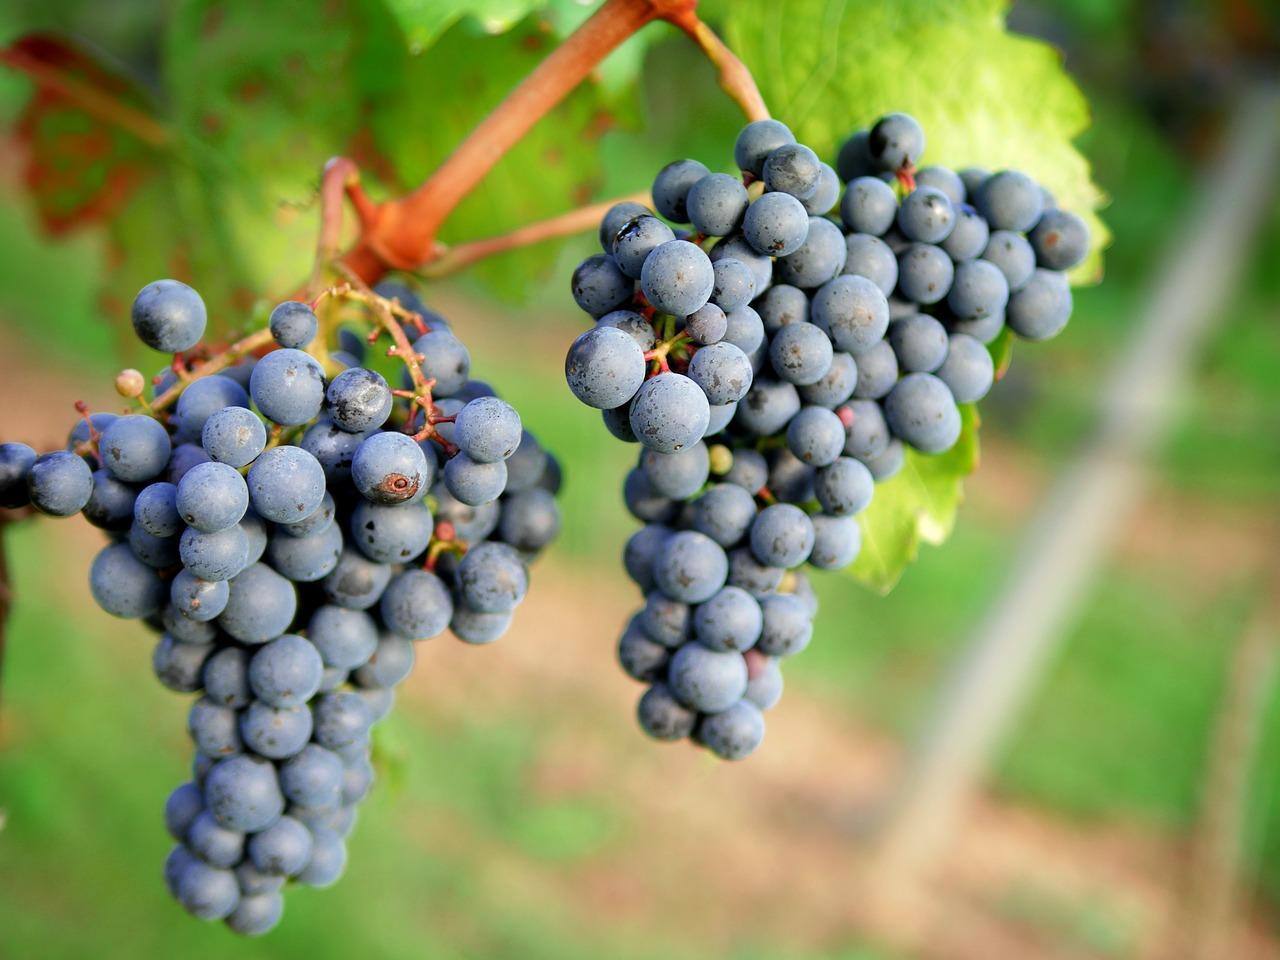 O processo de fabricação do vinho, que envolve fermentação, favorece a extração de resveratrol e de outros compostos bioativos da uva